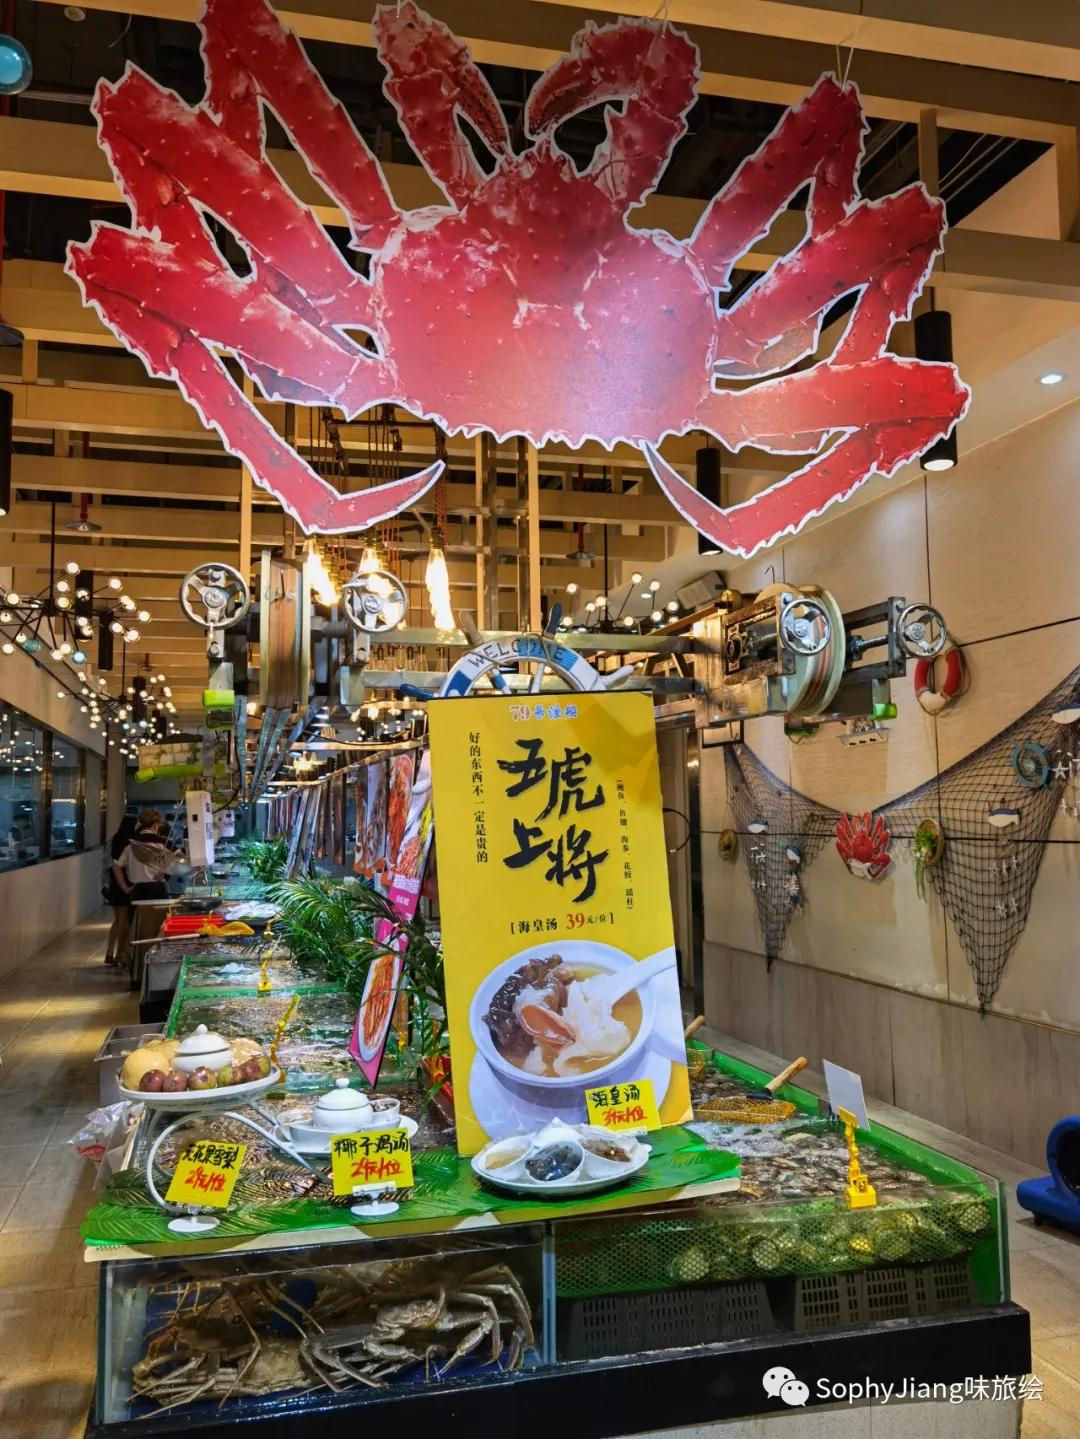 占据整层楼的渔船餐厅就在广州CBD，吃海鲜大餐不用再去黄沙南沙